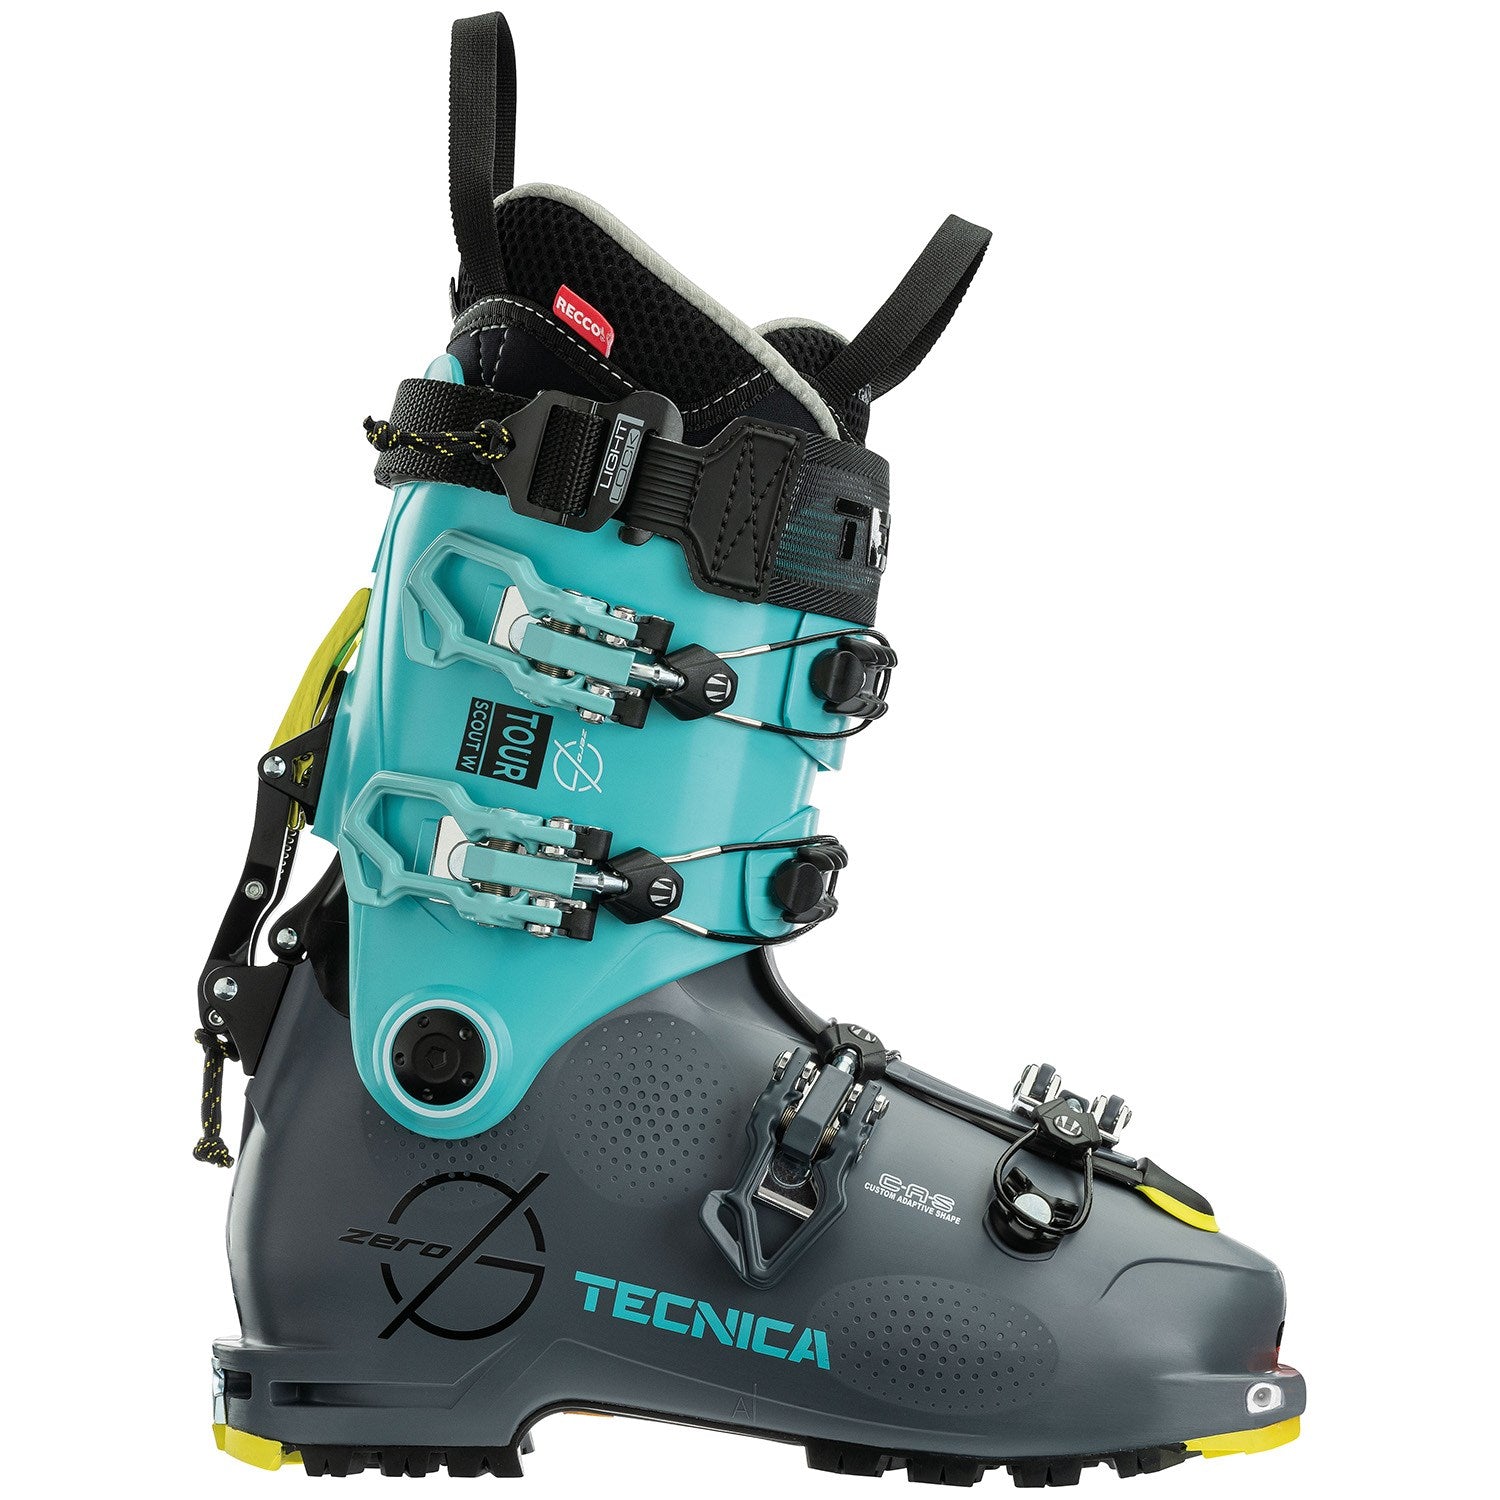 Tecnica Zero G Tour Scout W Alpine Touring Ski Boots - Women's 2022